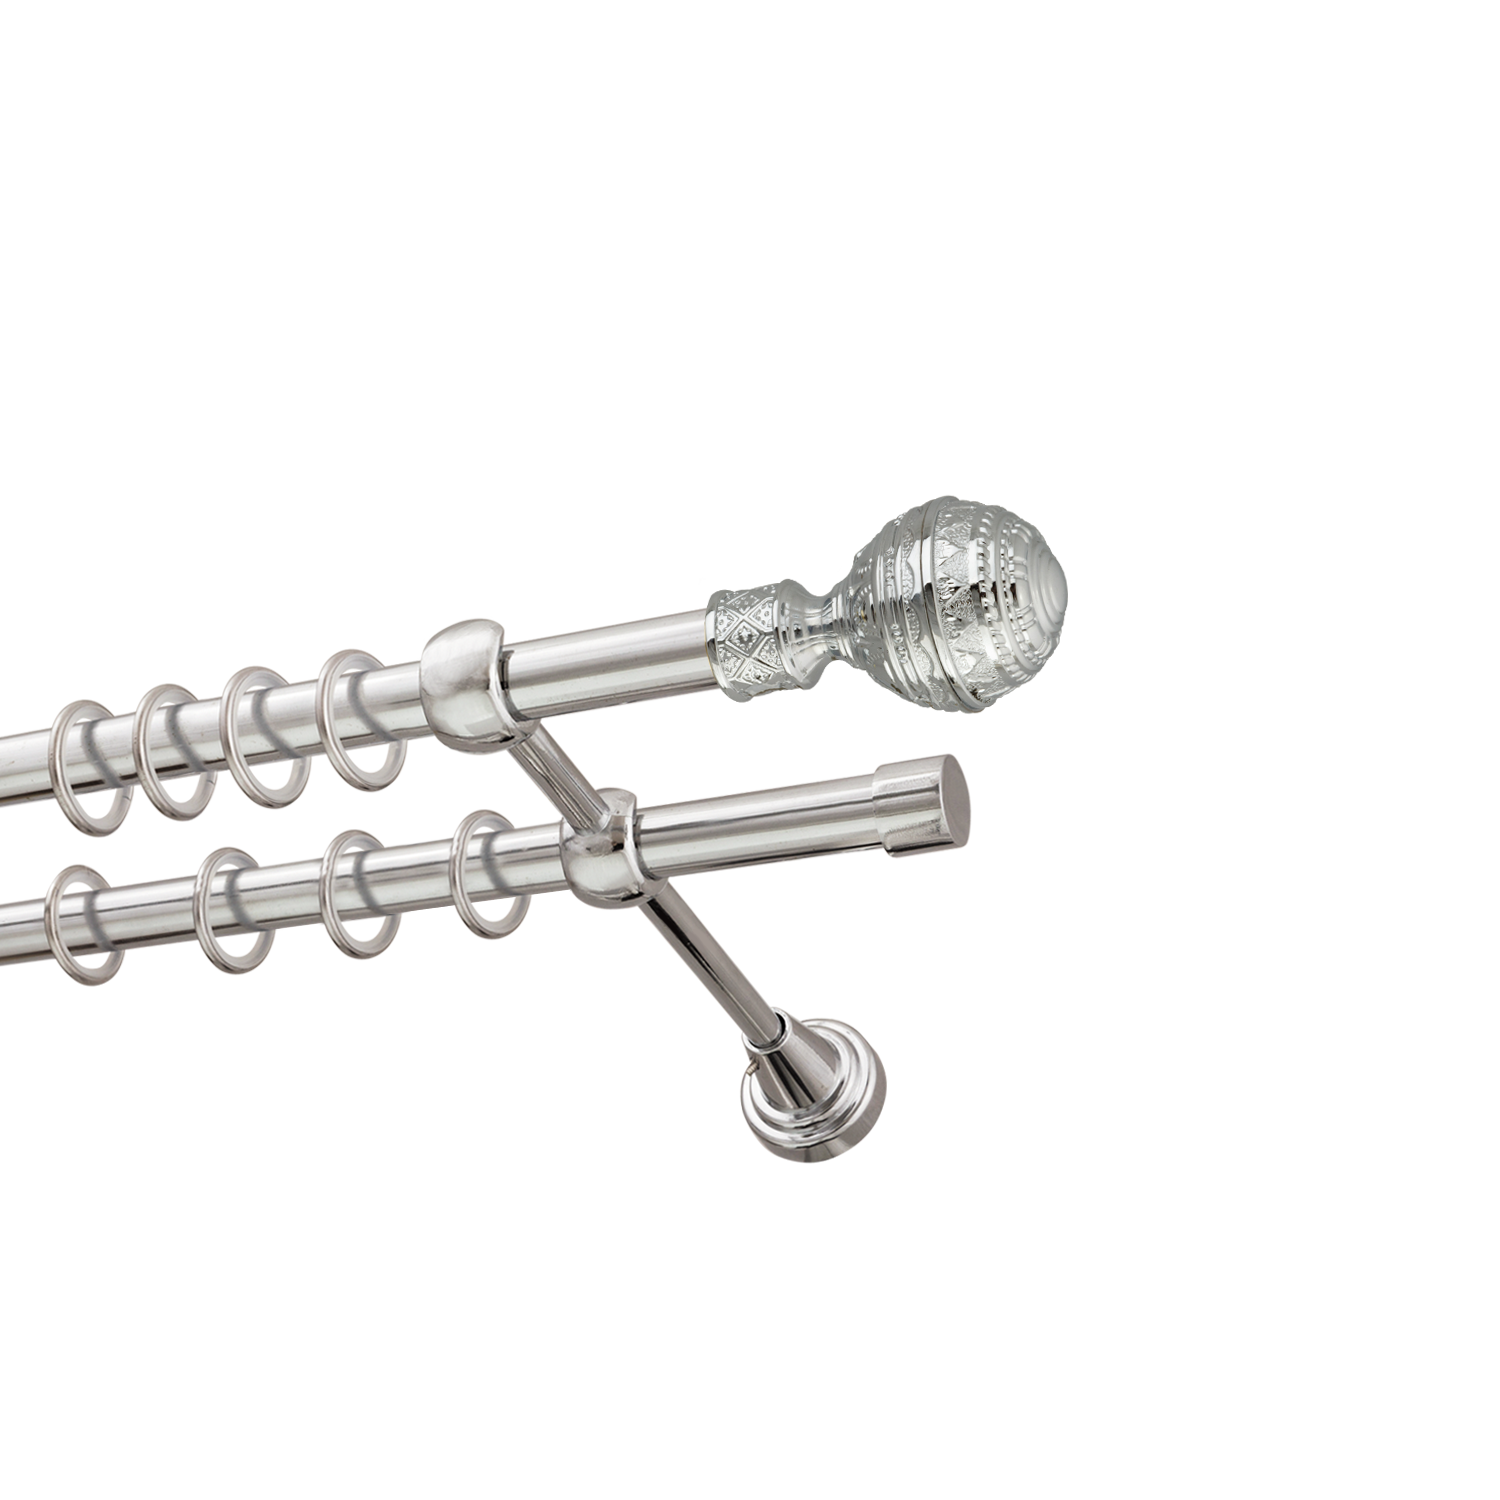 Металлический карниз для штор Роял, двухрядный 16/16 мм, серебро, гладкая штанга, длина 180 см - фото Wikidecor.ru